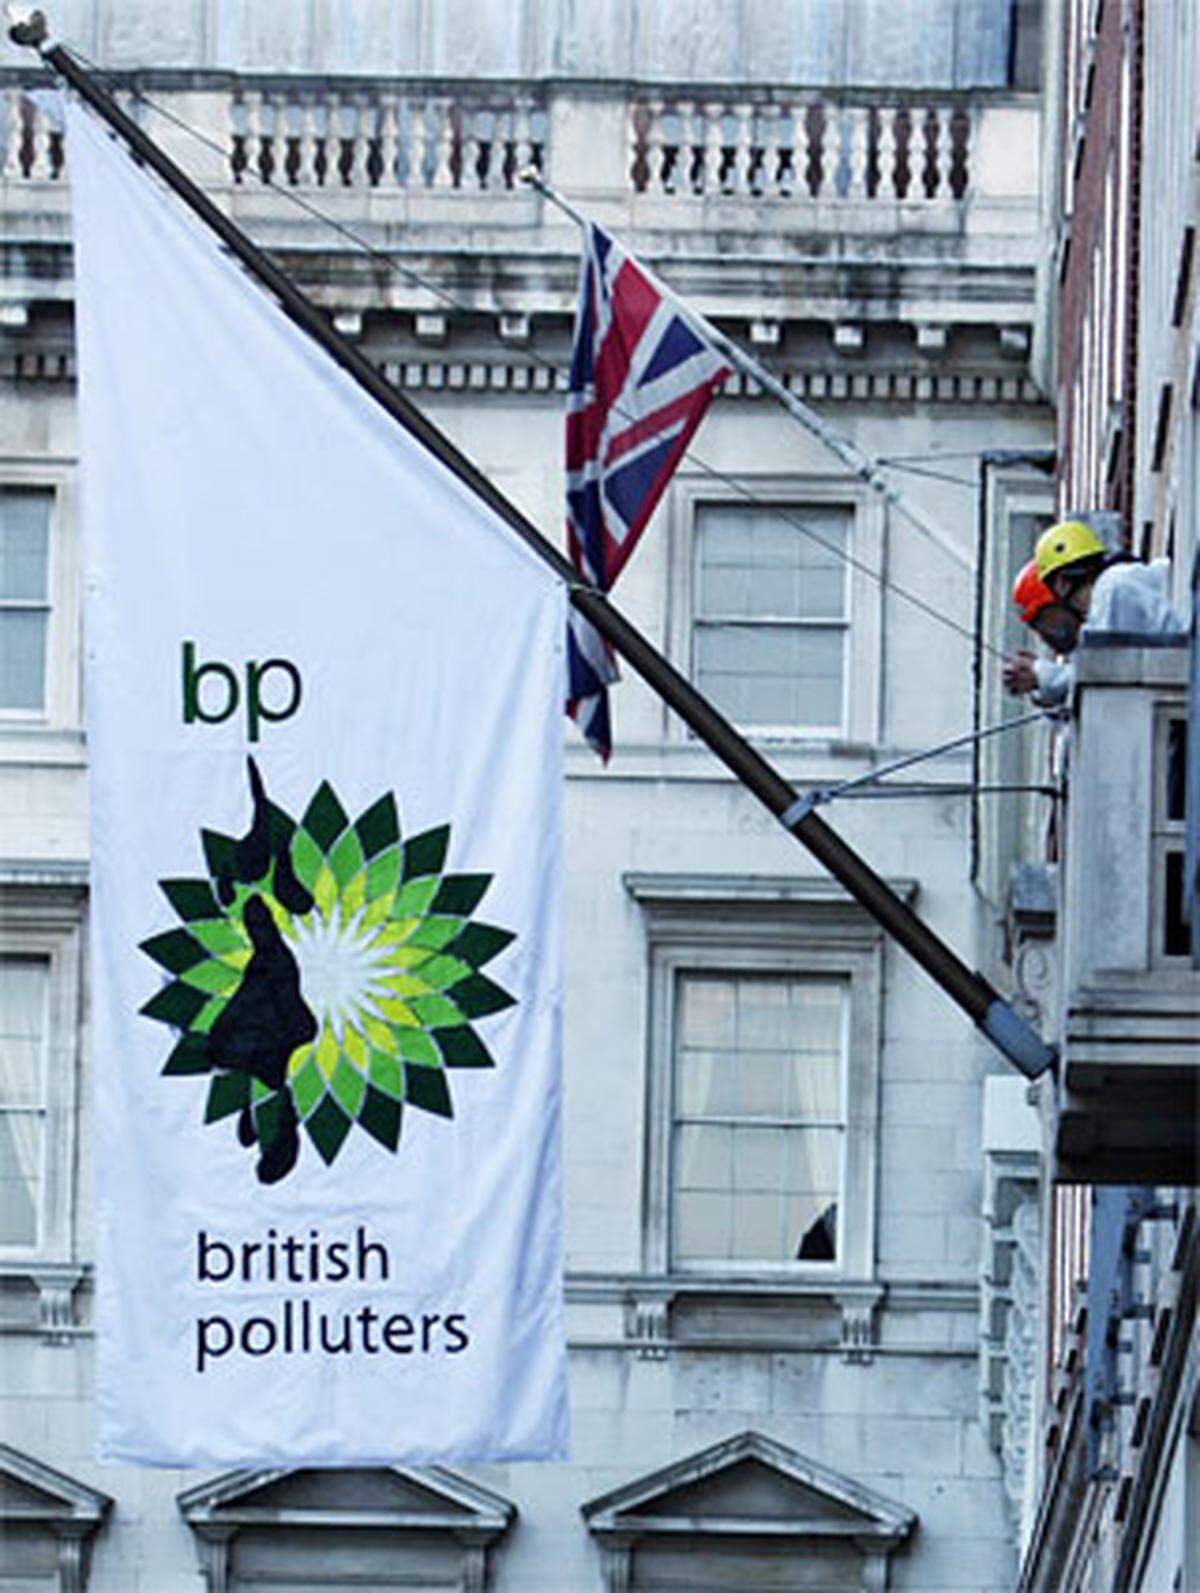 Das "Wall Street Journal" urteilt: "Was BP bislang pro Tag an erneuerbaren Energien erzeugt, ist weniger als ein Zehntel eines Prozents seiner Öl- und Gasproduktion." Zwei Beispiele zeigen, dass sich das wohl gepflegte Öko-Image bei genauerer Betrachtung vor allem als inhaltsleeres PR-Mittel entpuppt.